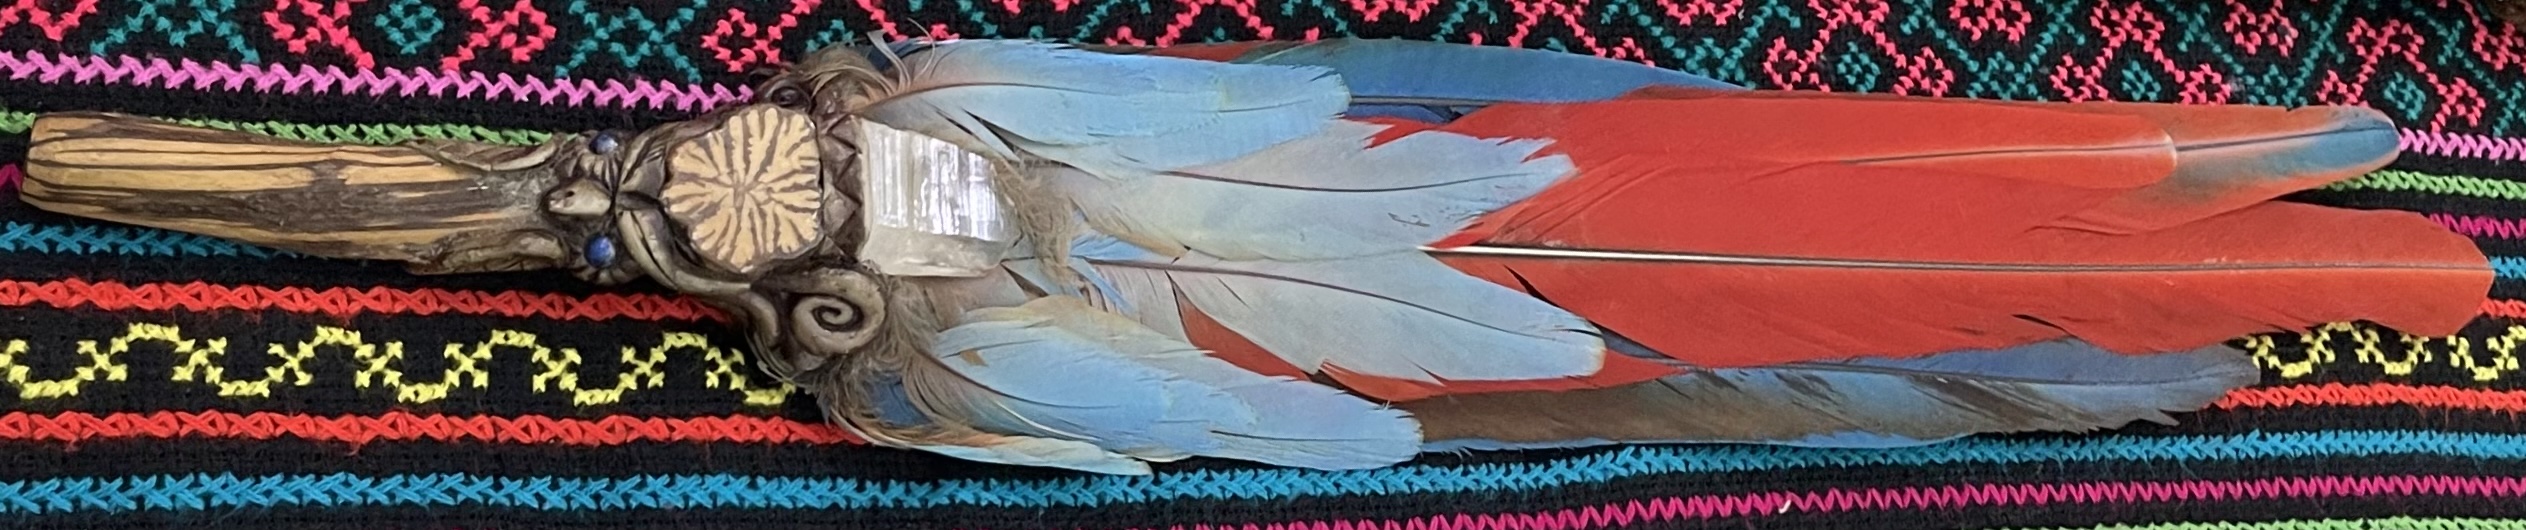 Инструмент шамана из перьев попугая огайо